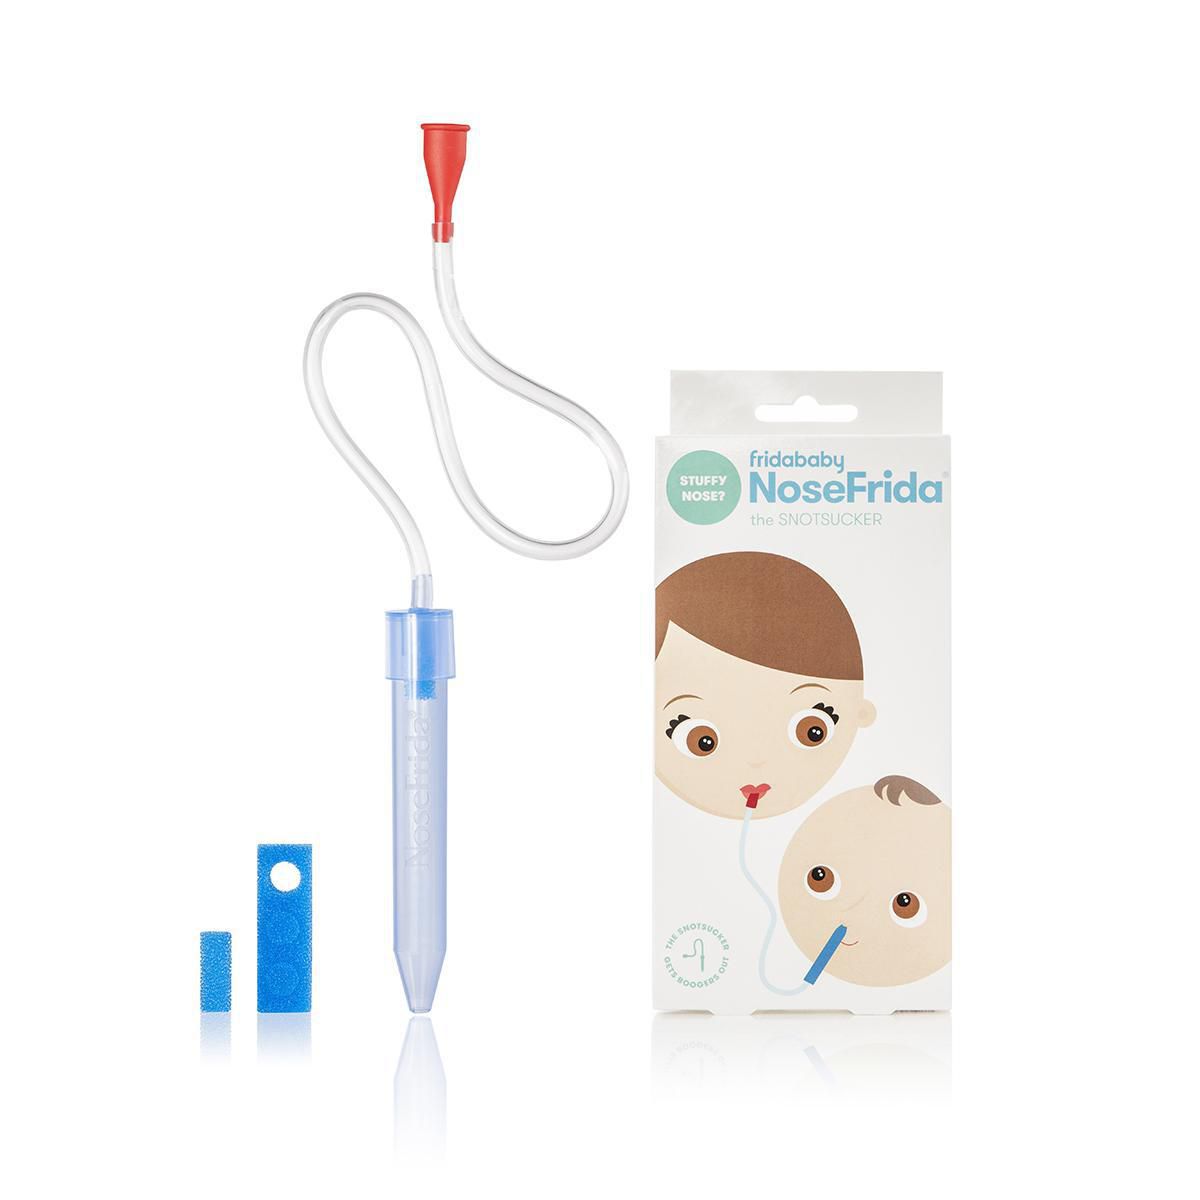 nasal aspirator for baby price